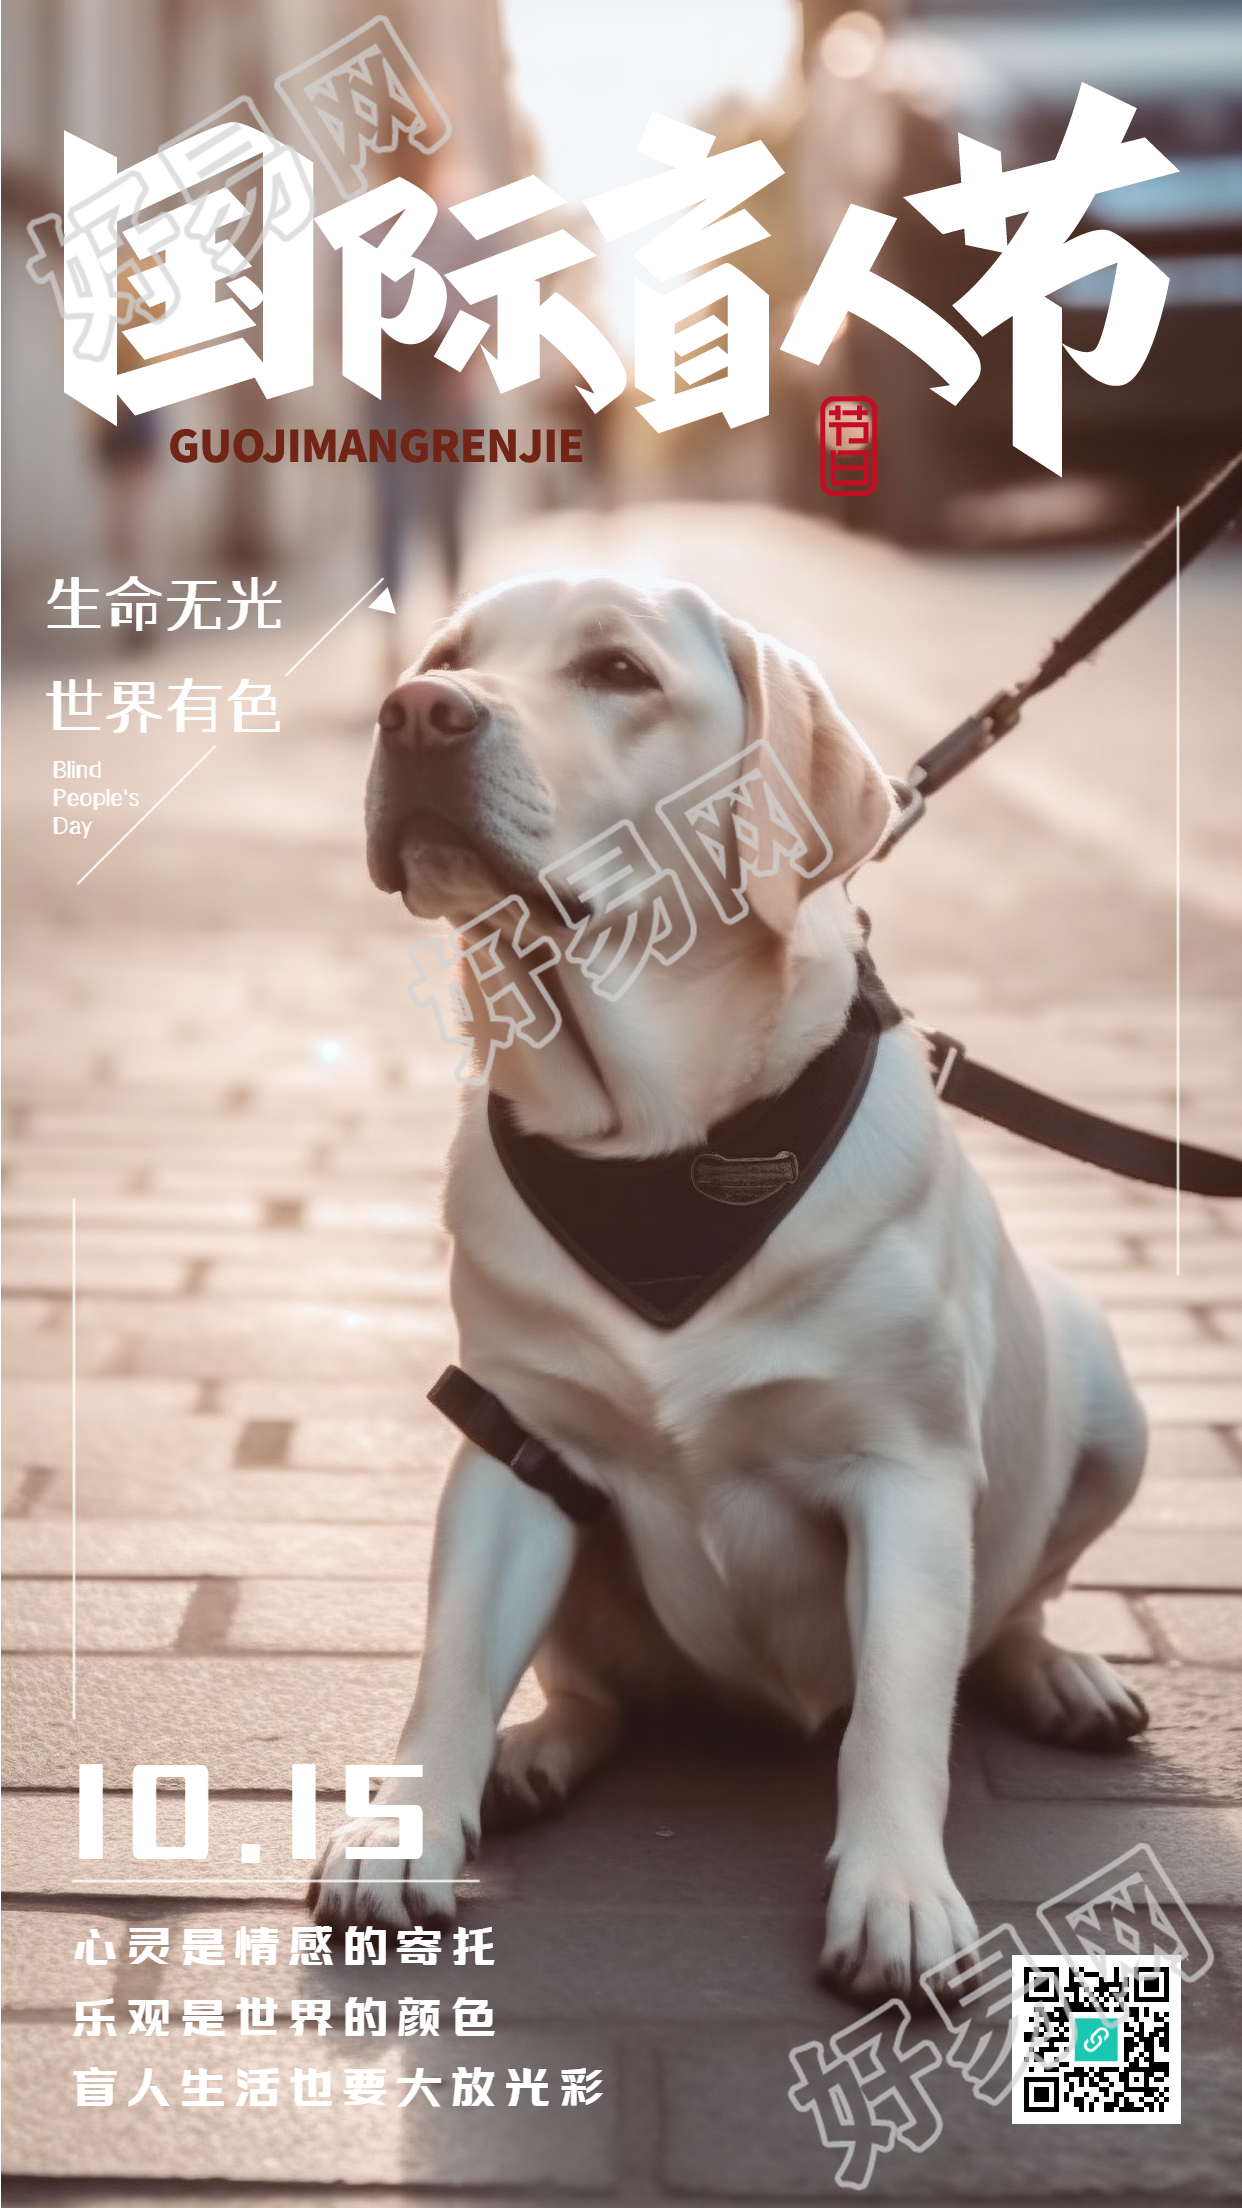 乖巧的导盲犬实景盲人节创意宣传手机海报